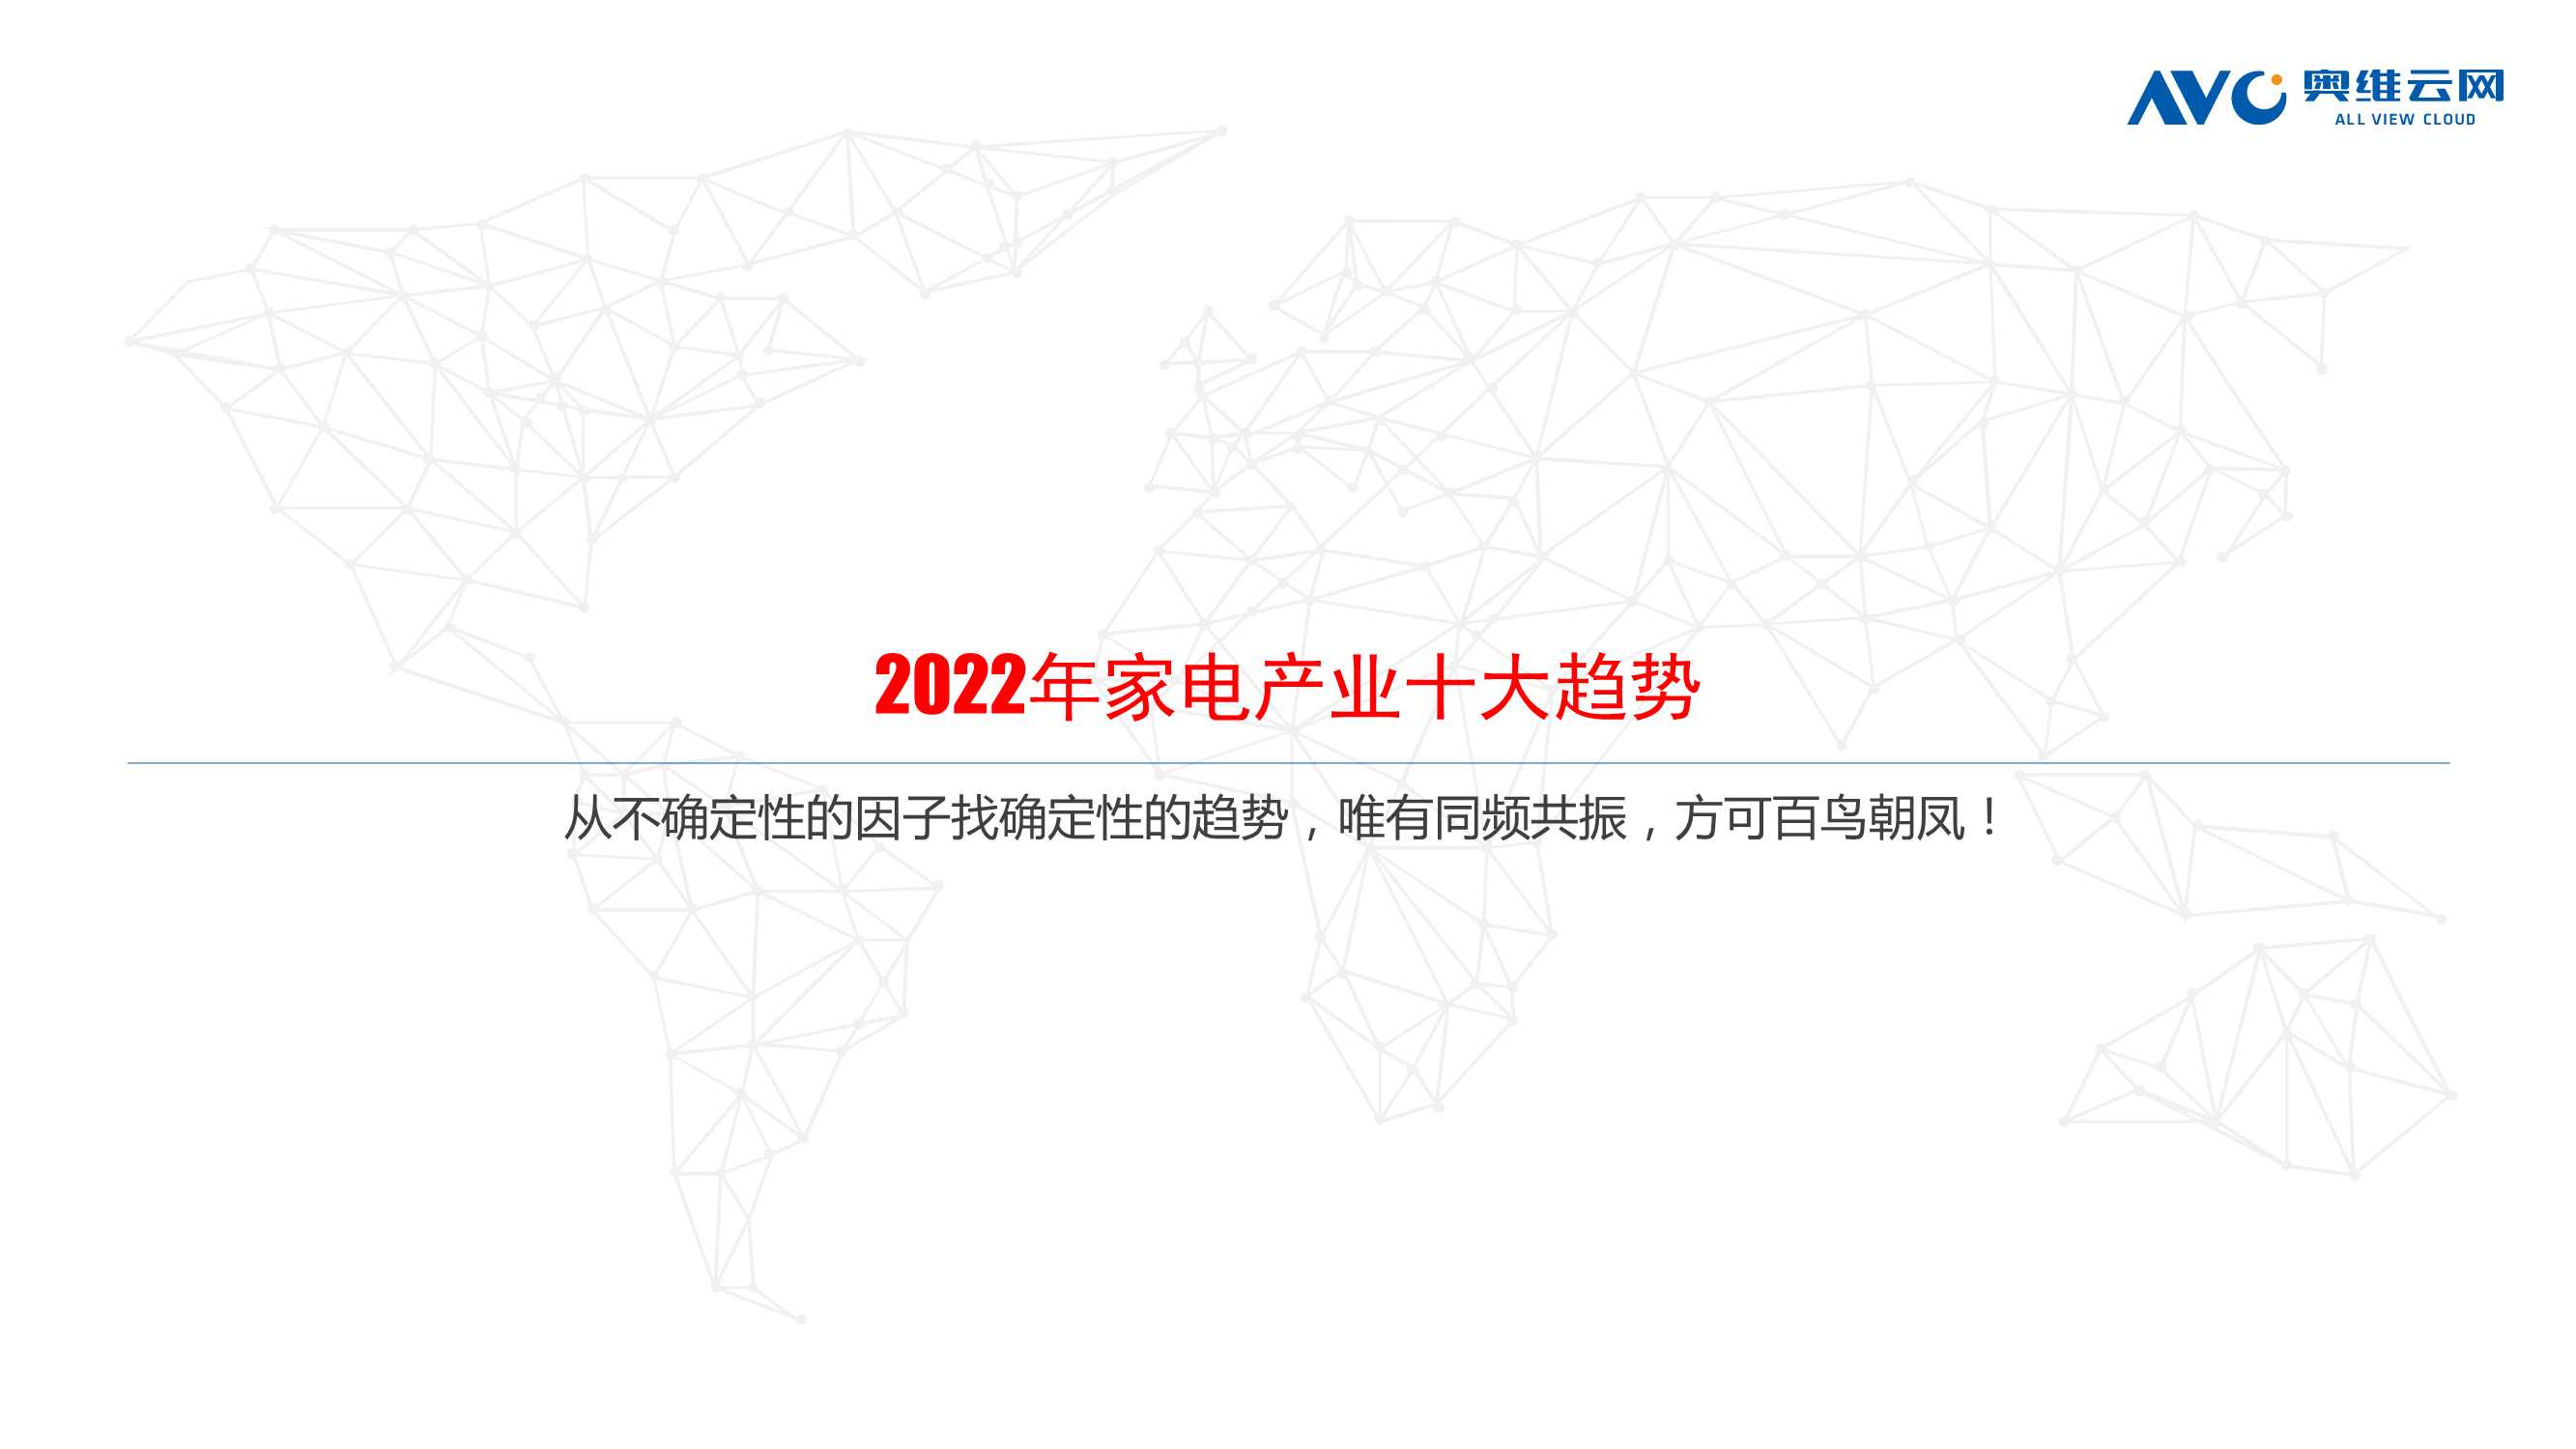 奥维云网-2022年中国家电发展趋势，从“不确定”性到“确定性”-2022.03-21页